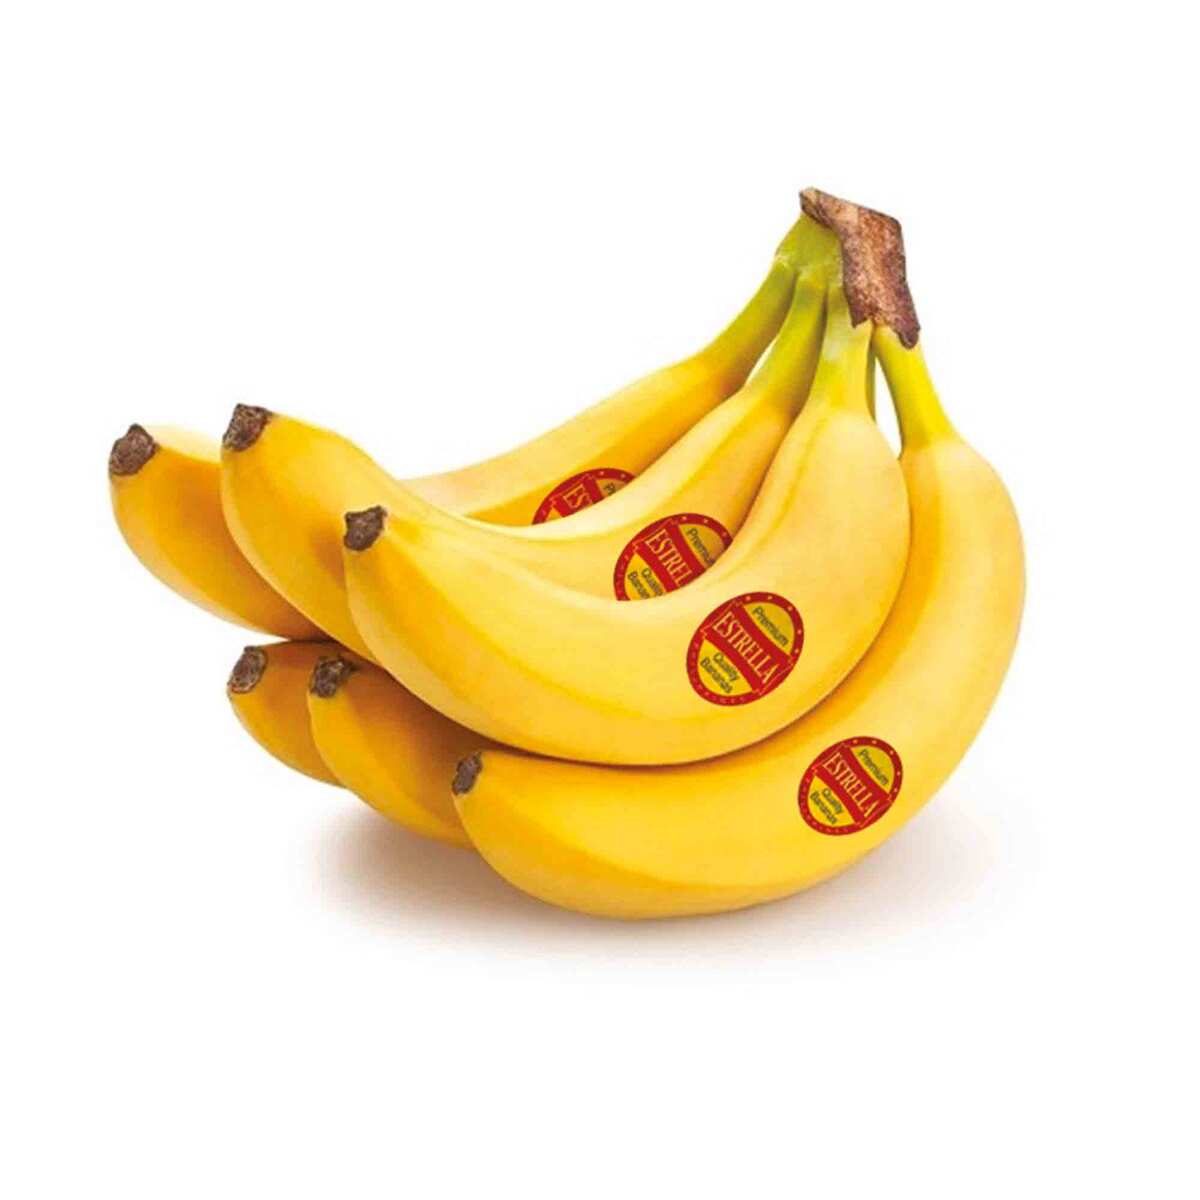 اشتري قم بشراء موز إستريلا فلبيني طازج 1 كجم Online at Best Price من الموقع - من لولو هايبر ماركت Bananas في الكويت